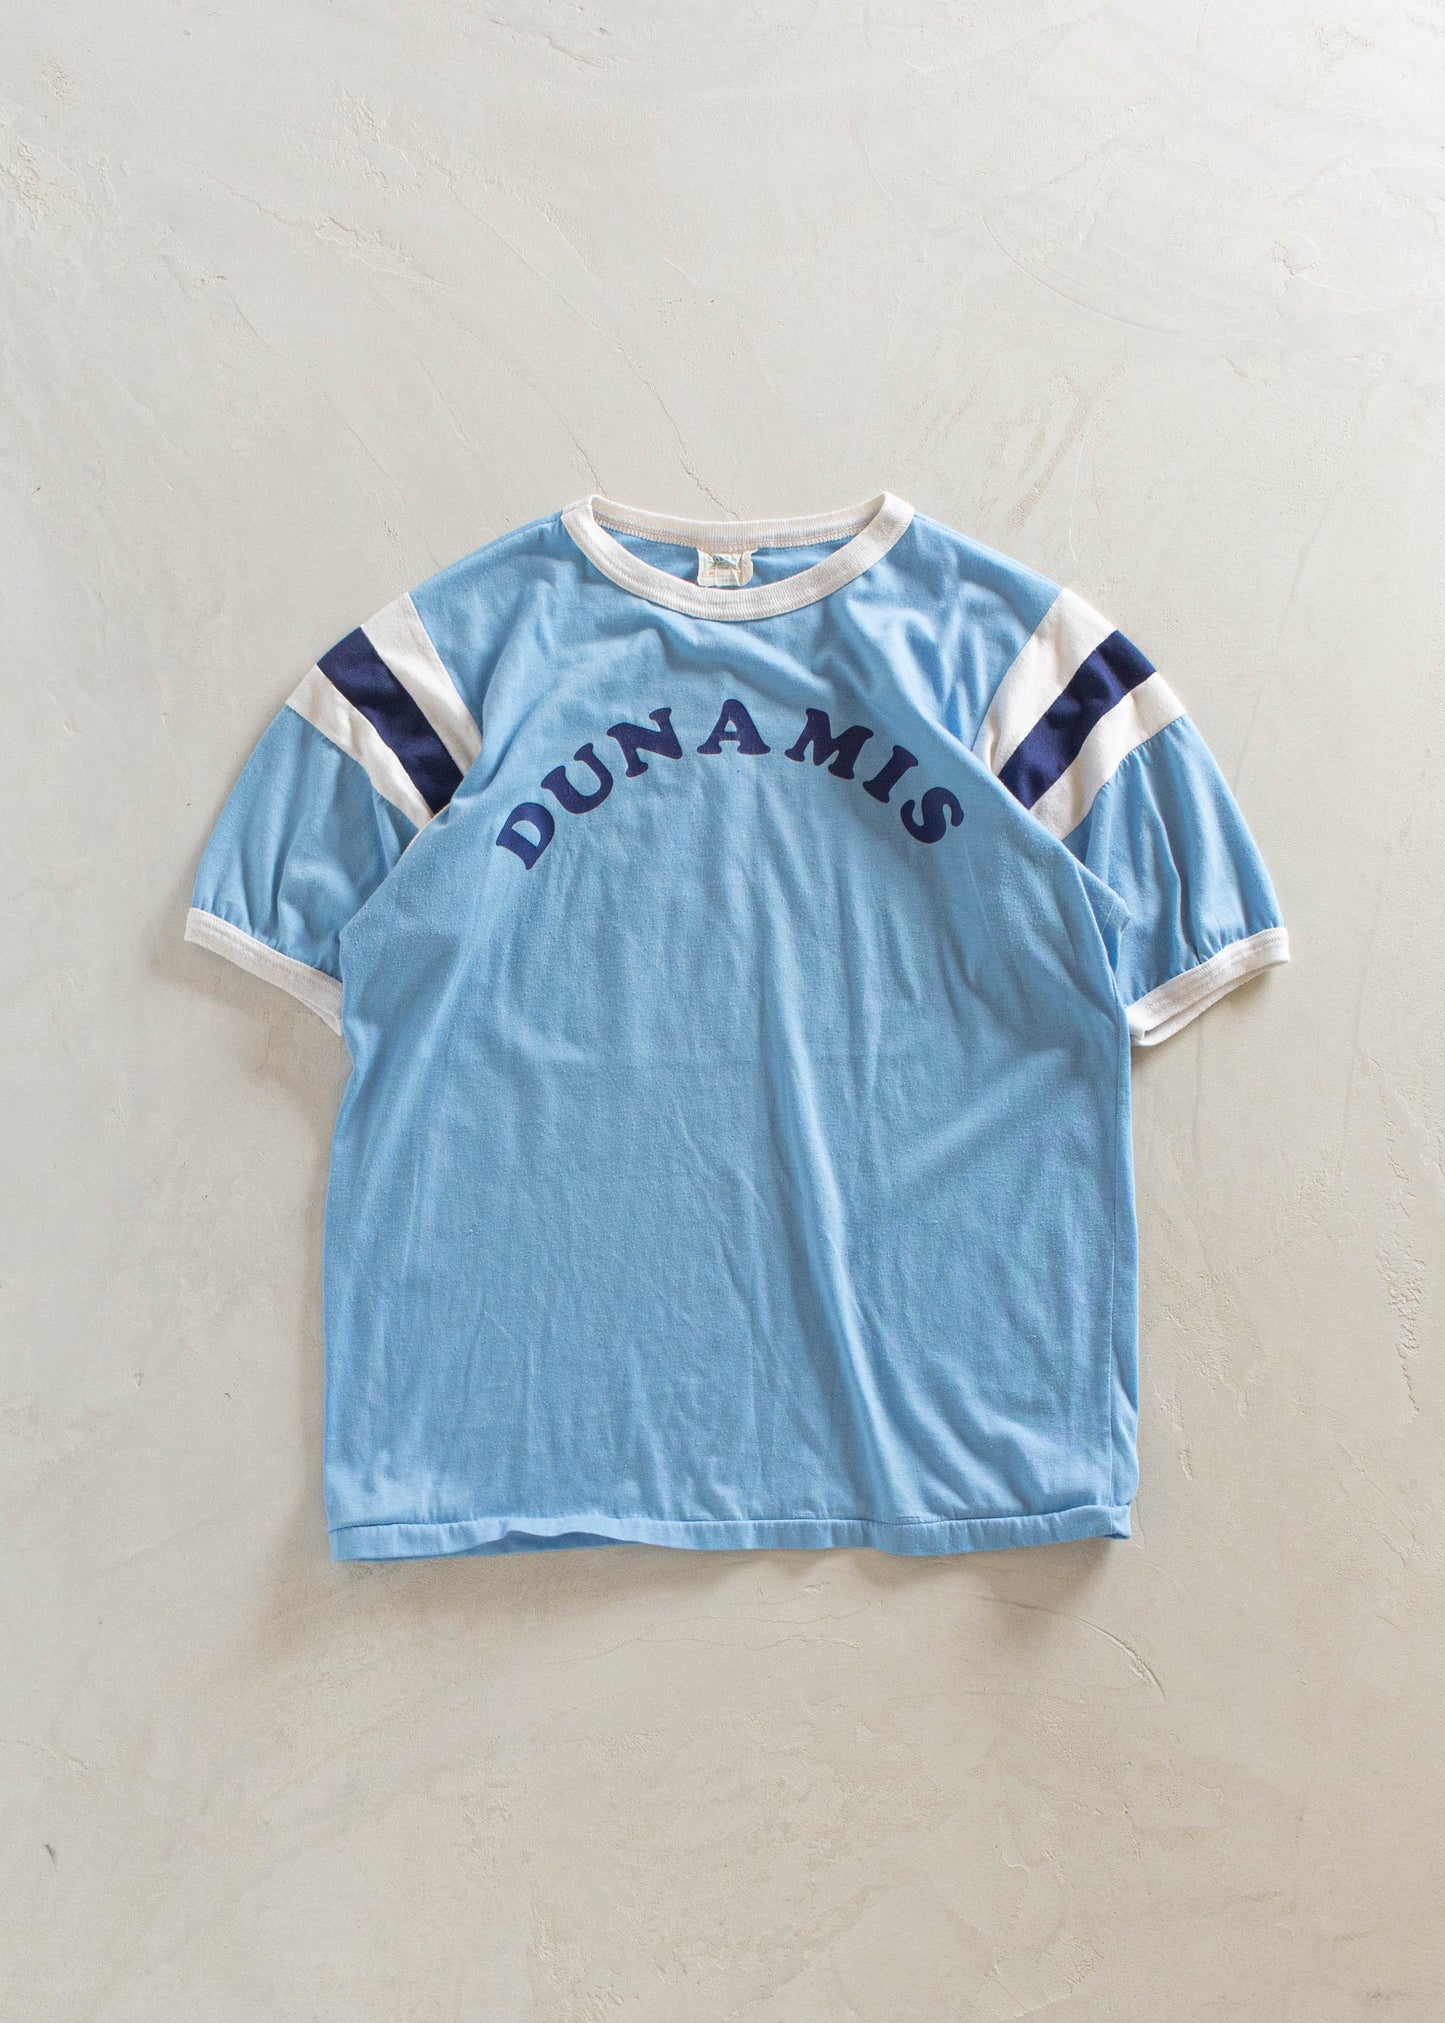 1980s Calhoun Dunamis Sport T-Shirt Size M/L